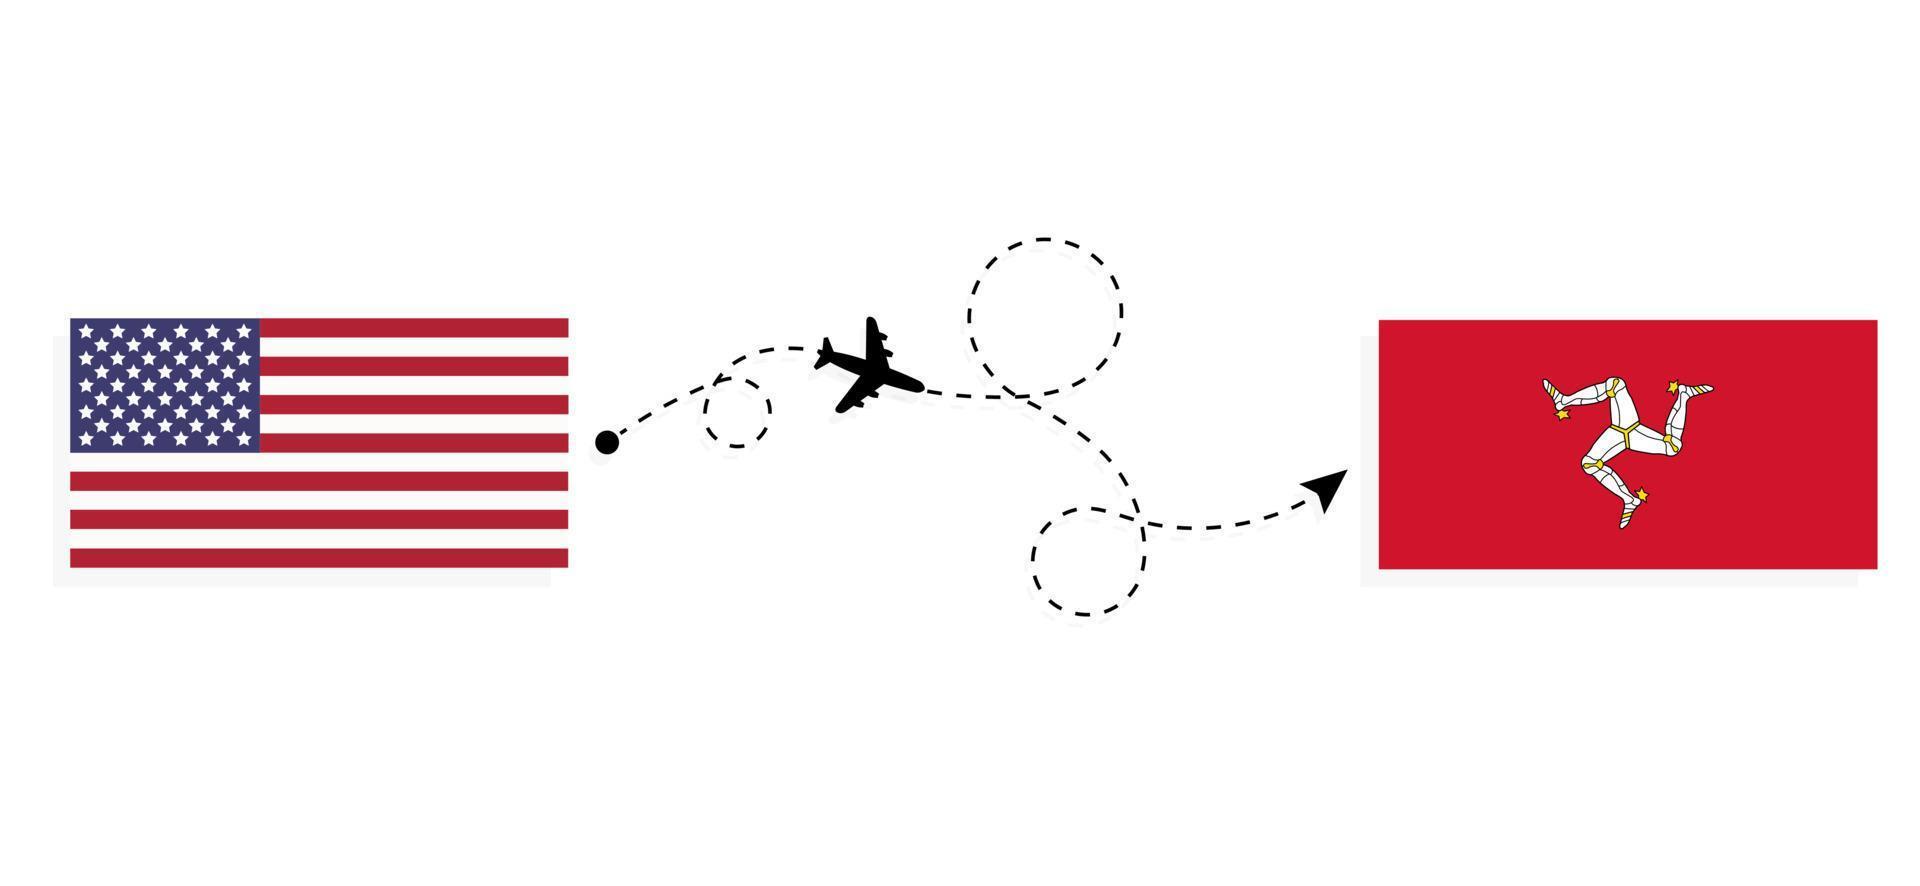 vol et voyage des états-unis à l'île de mann par concept de voyage en avion de passagers vecteur